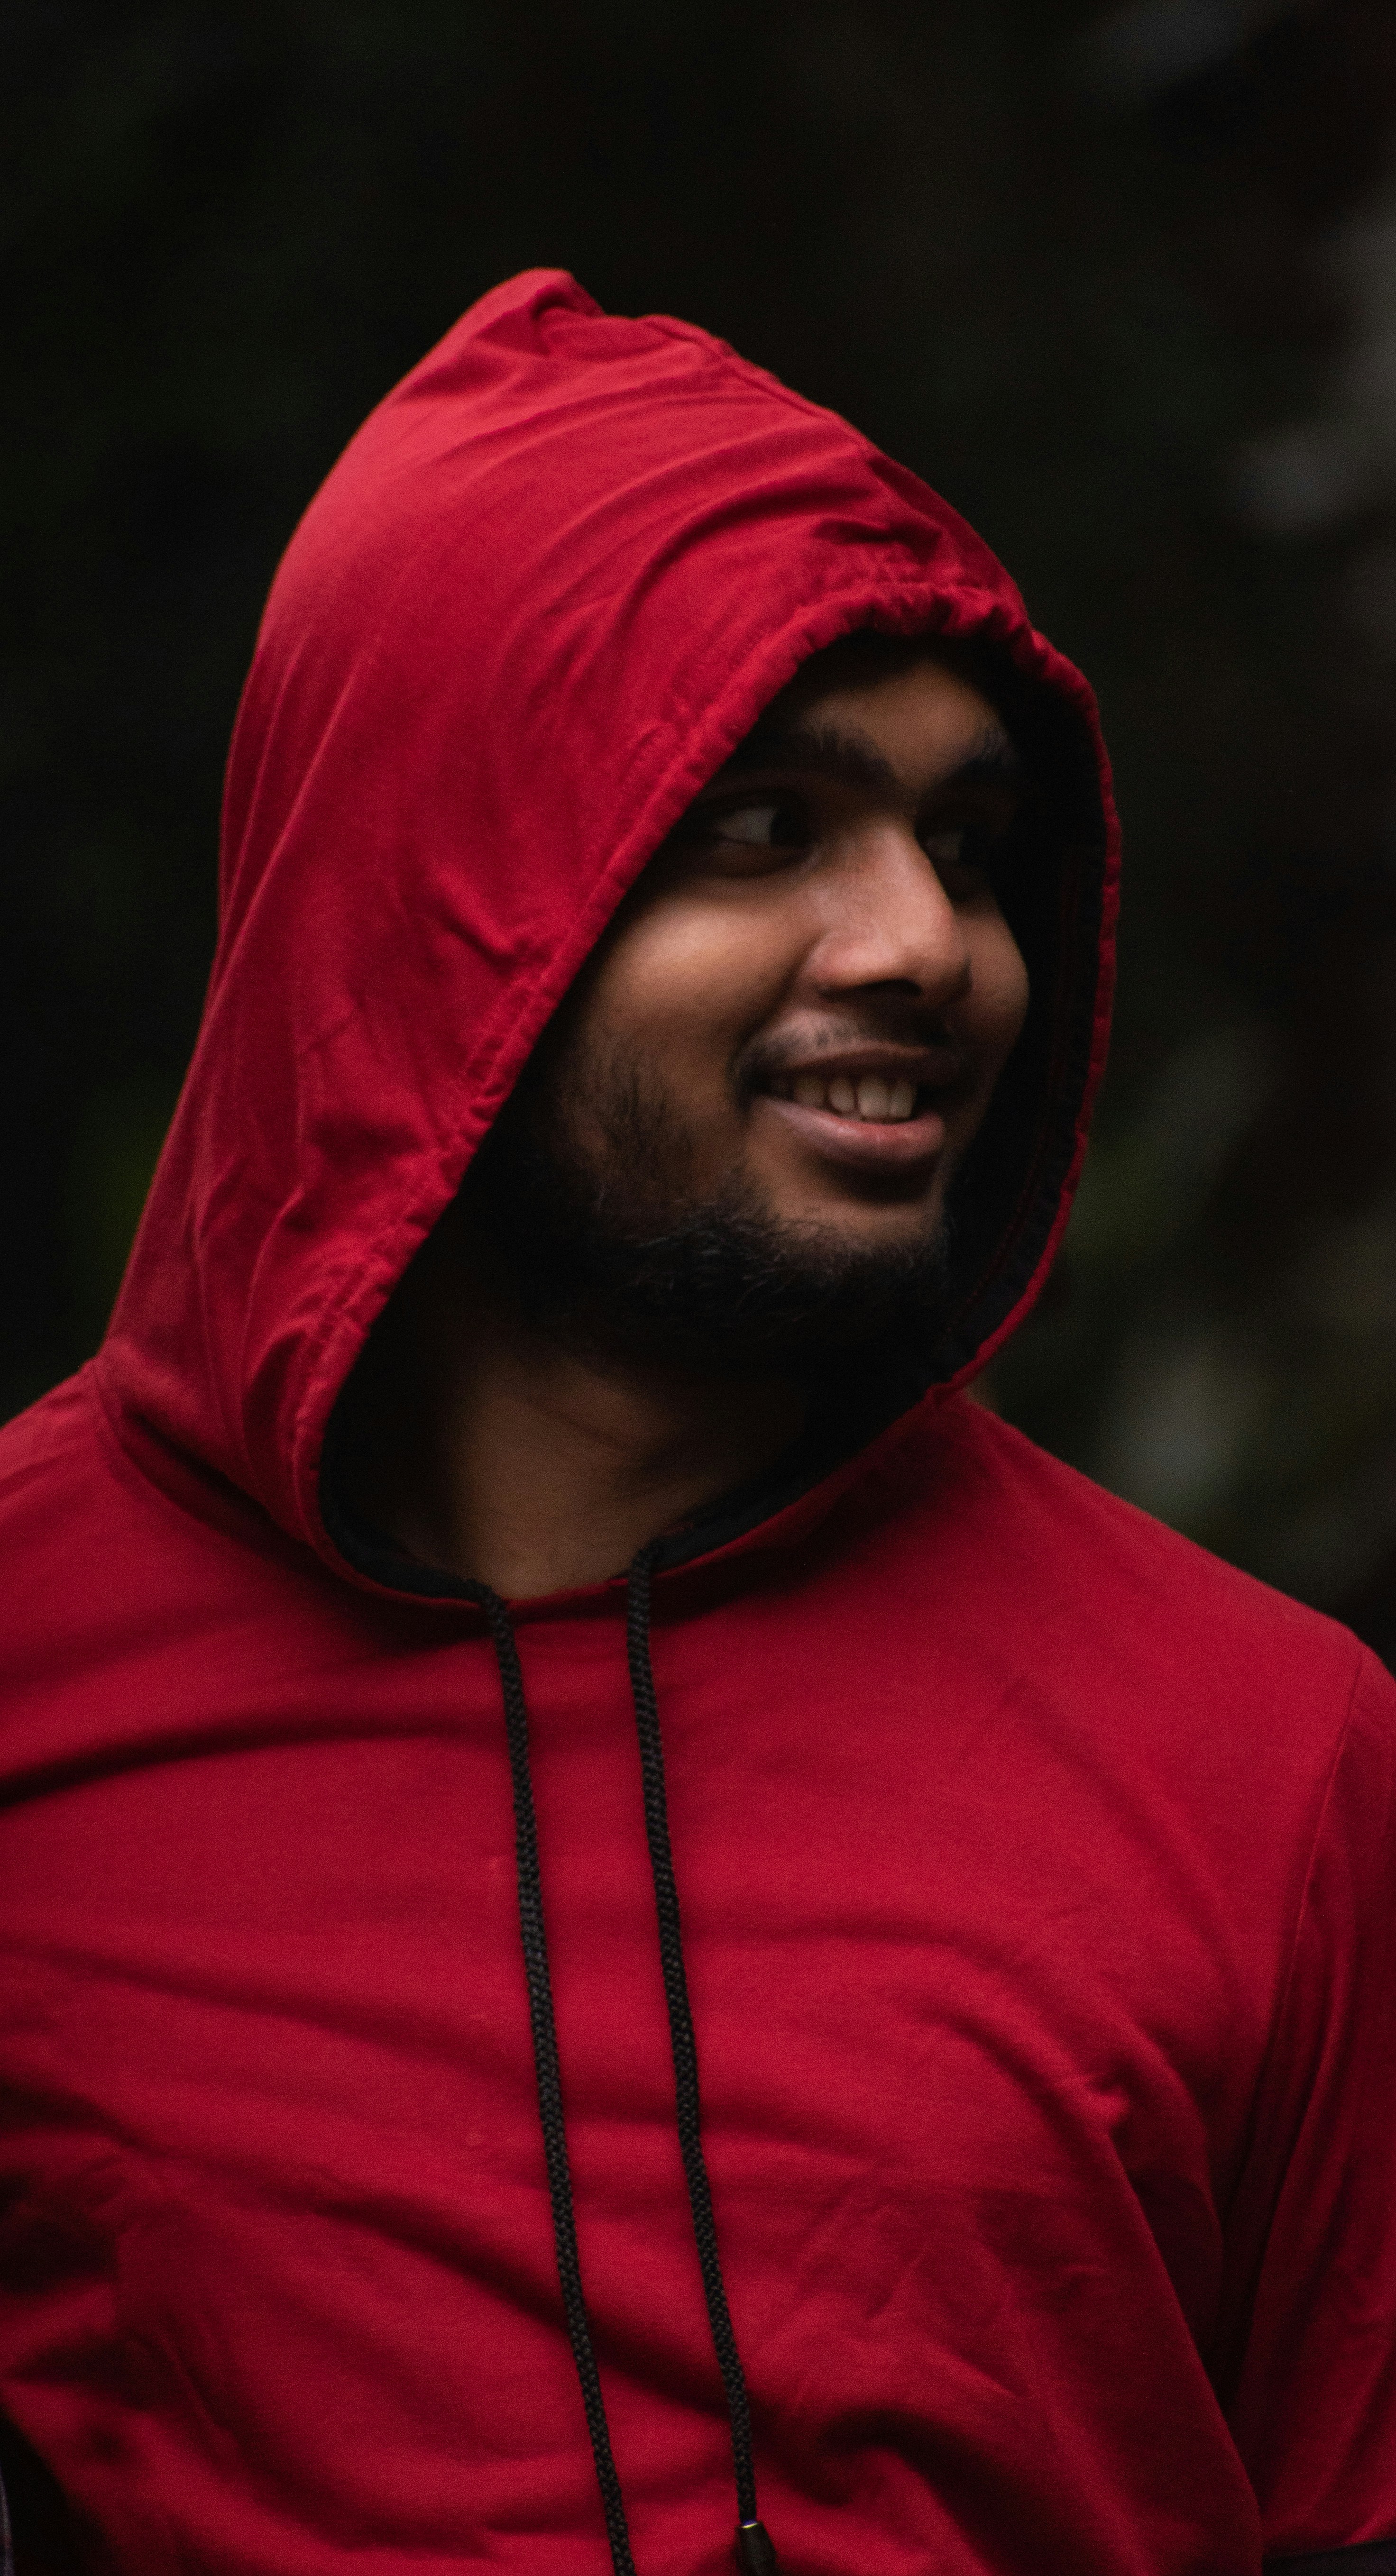 Red hoodie allowed Islam